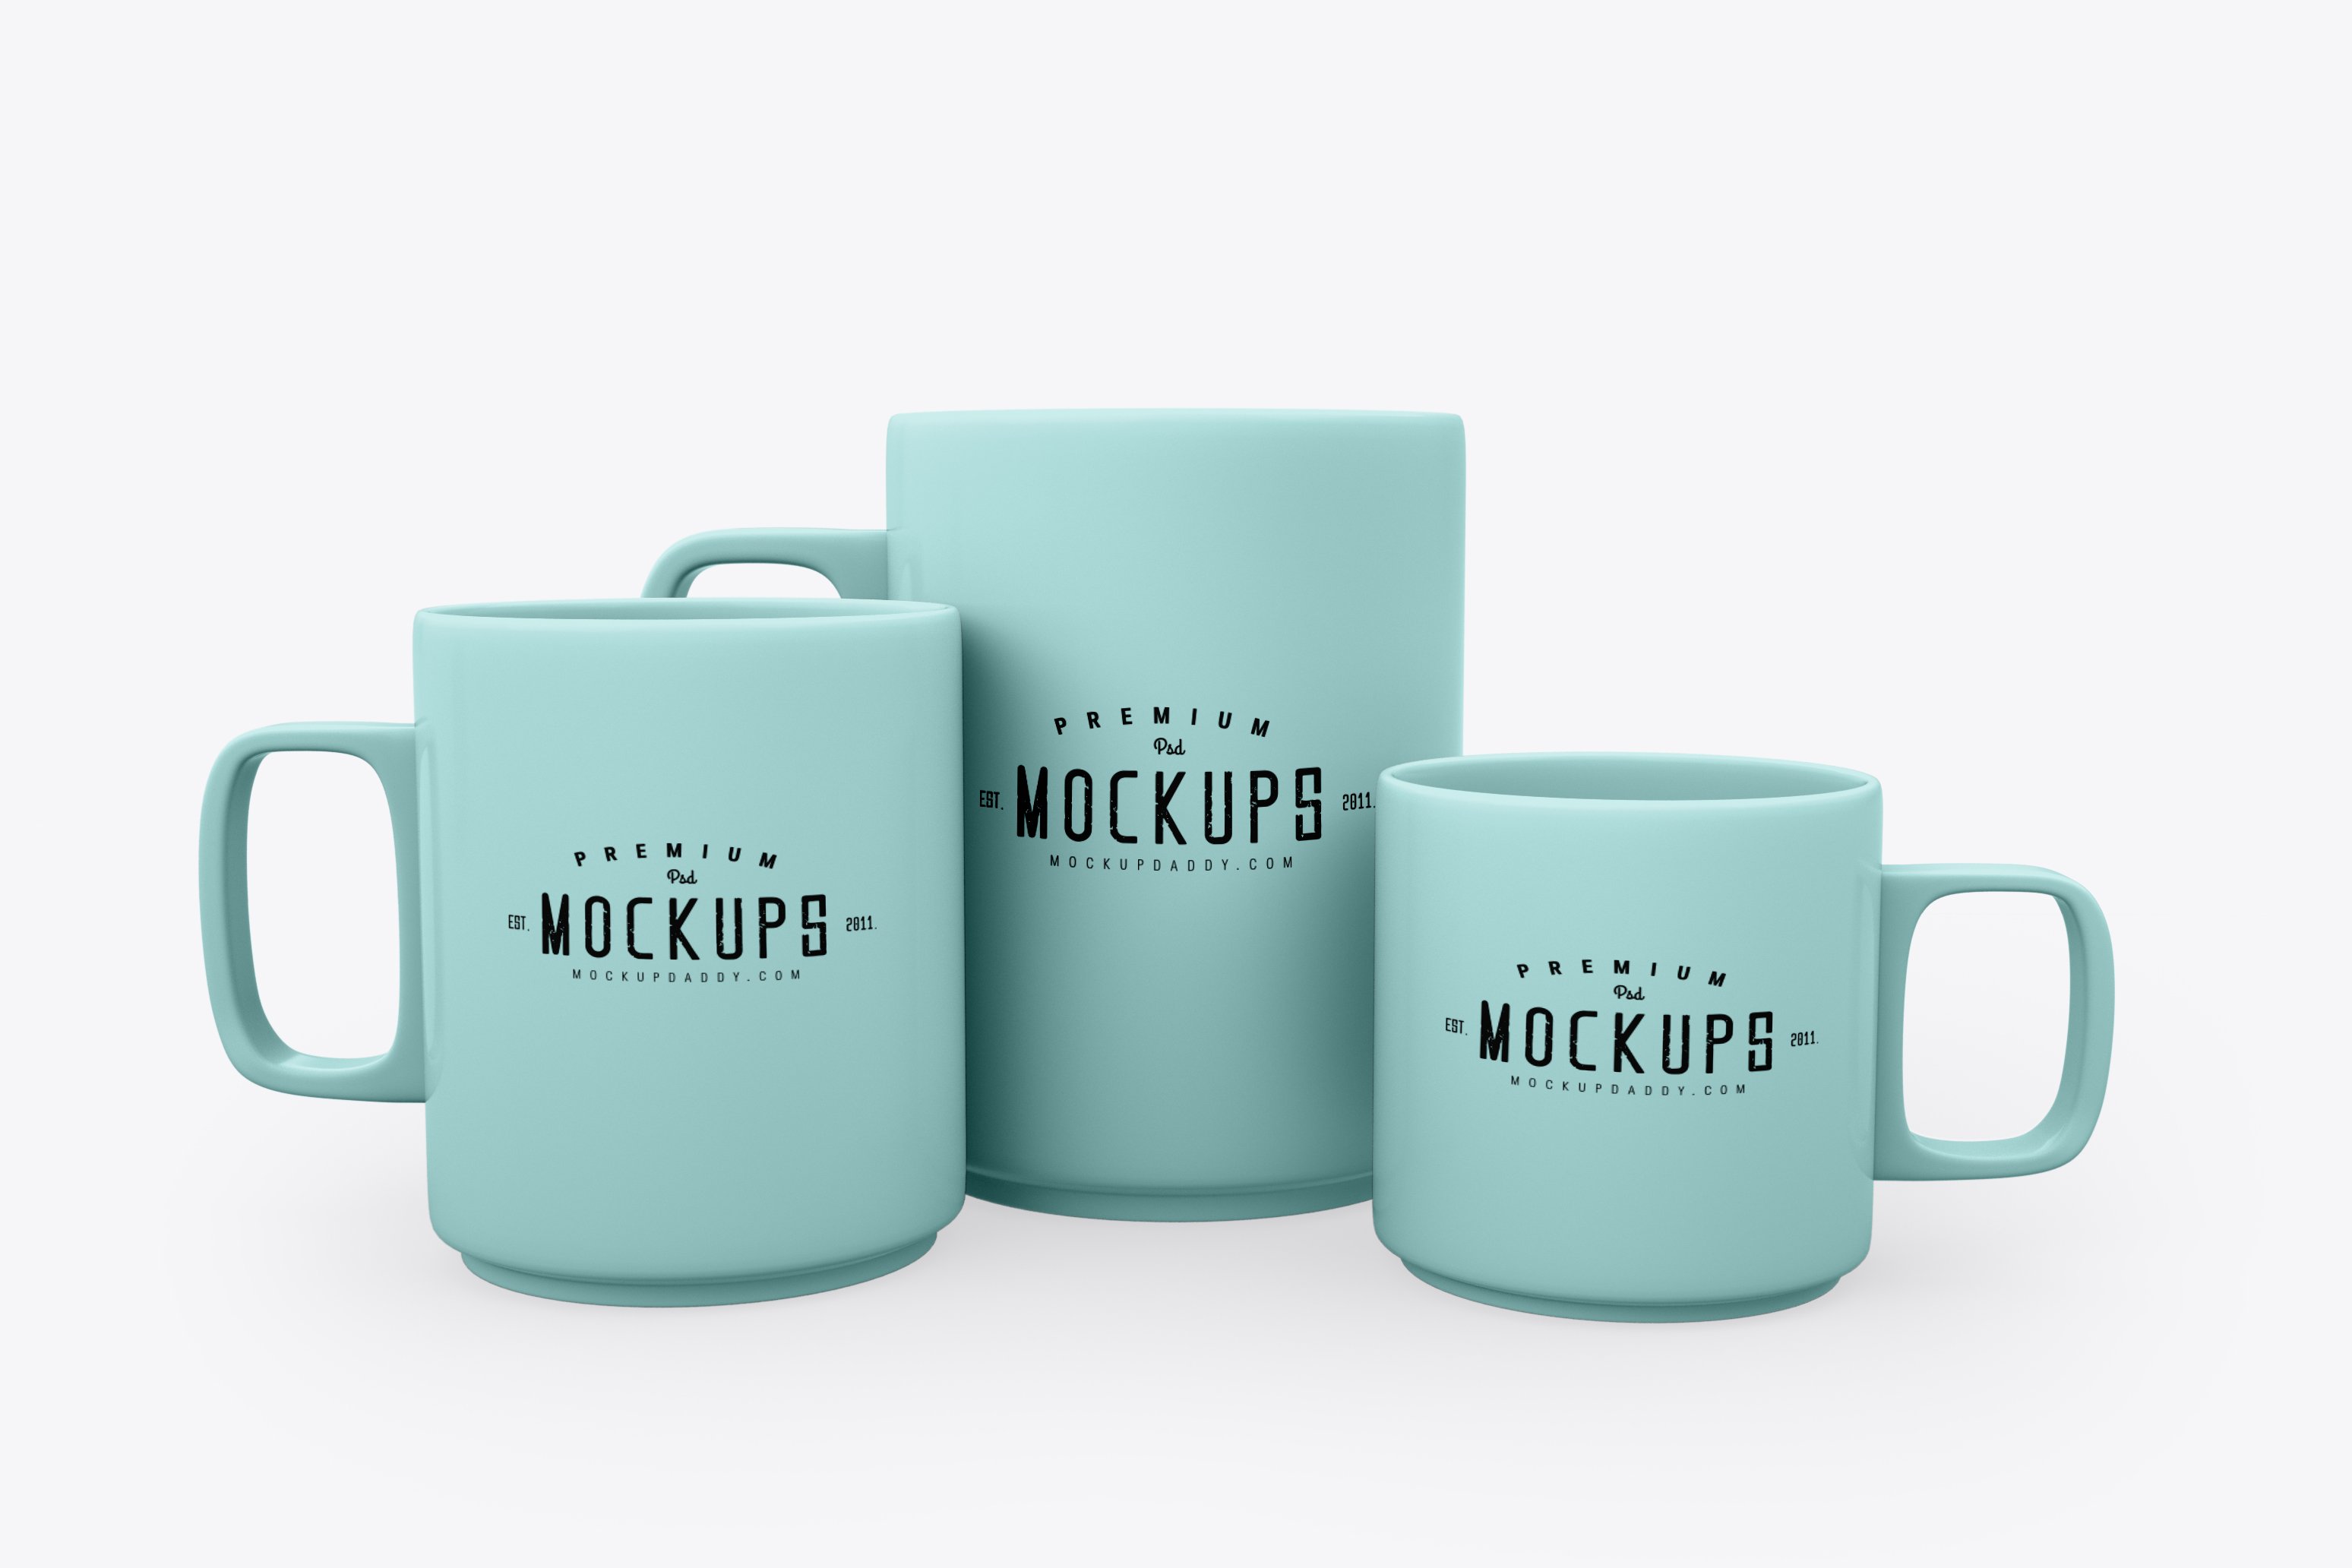 Ceramic Mug Mockup - 3 Sizes cover image.